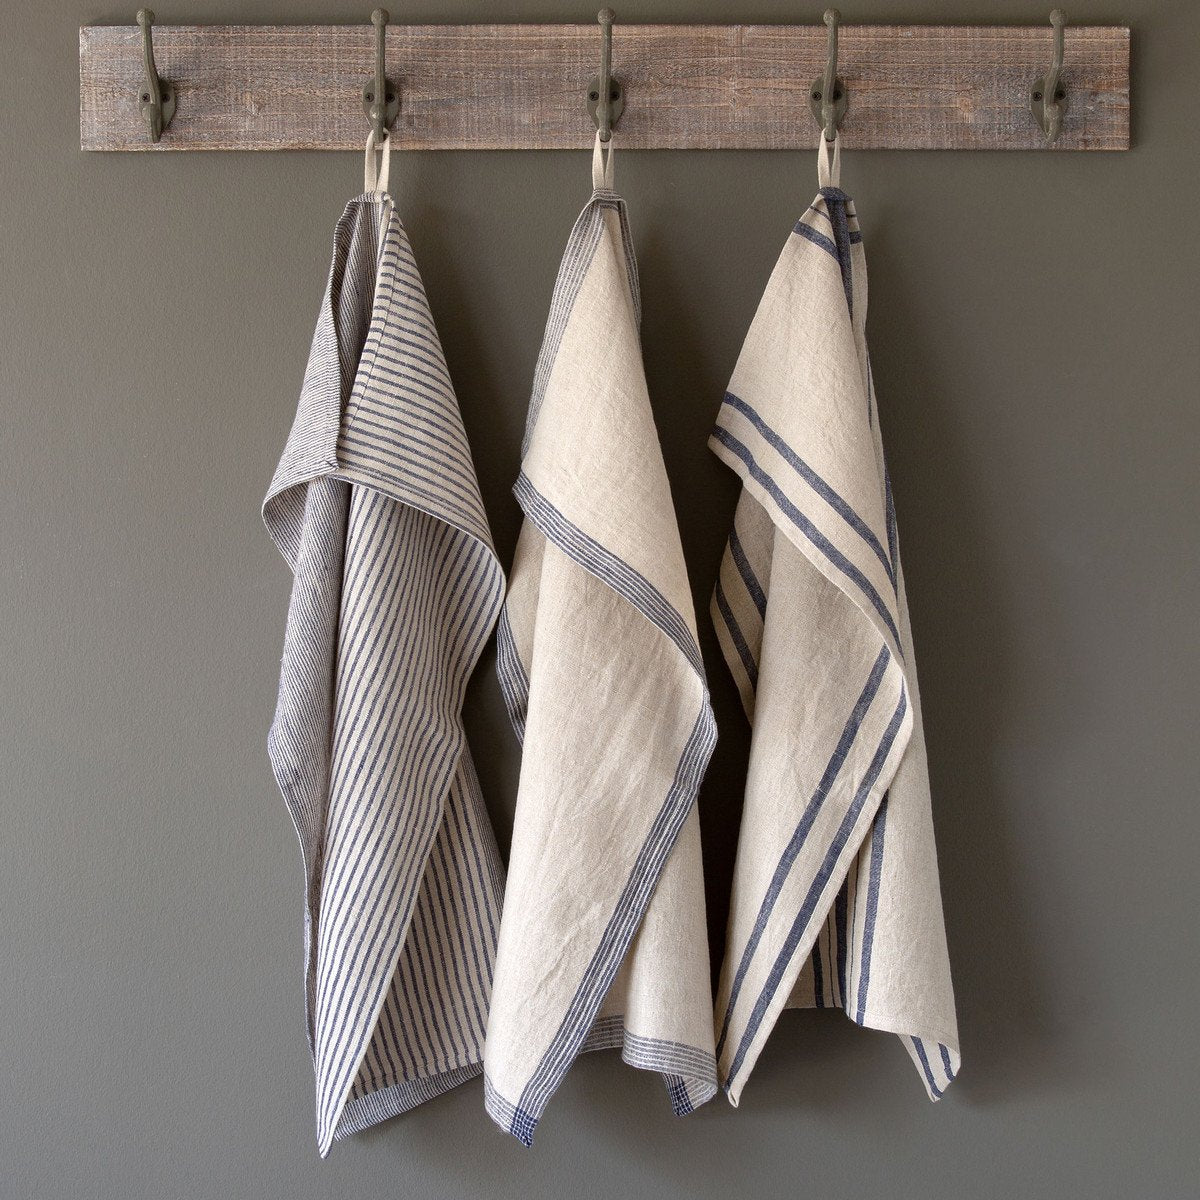 Soft Linen Dish Towel - Blues - Moss & Embers Home Decorum